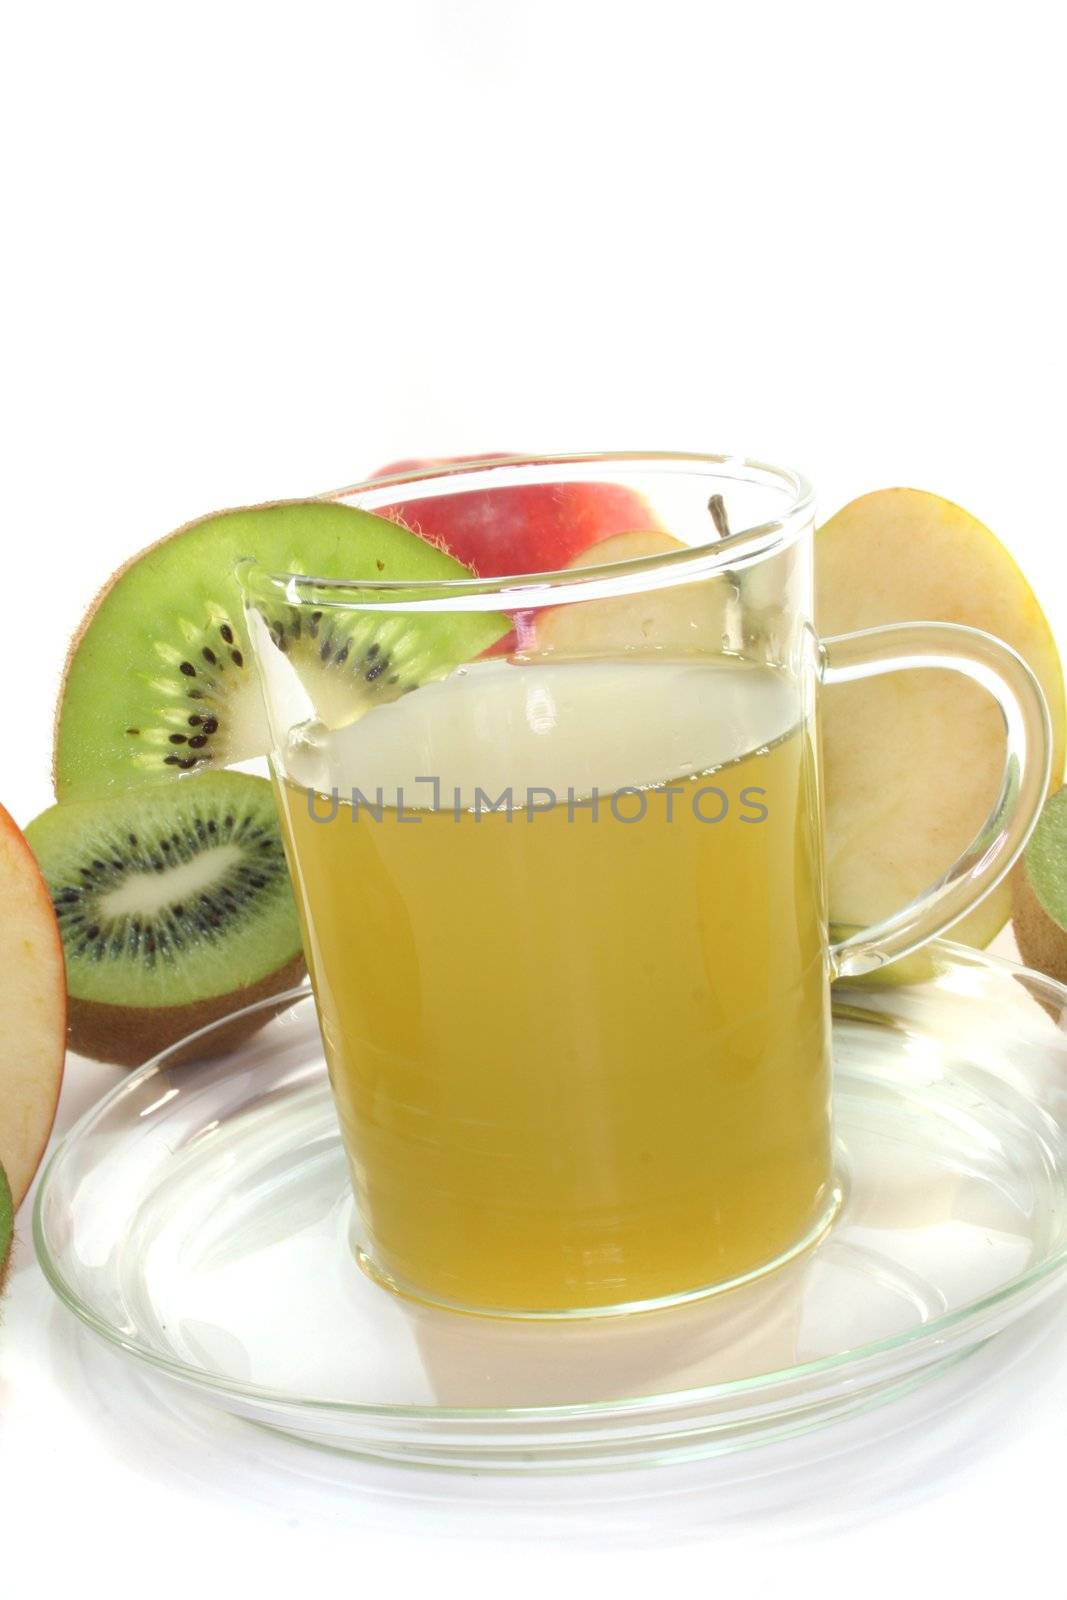 kiwi-apple tea by discovery